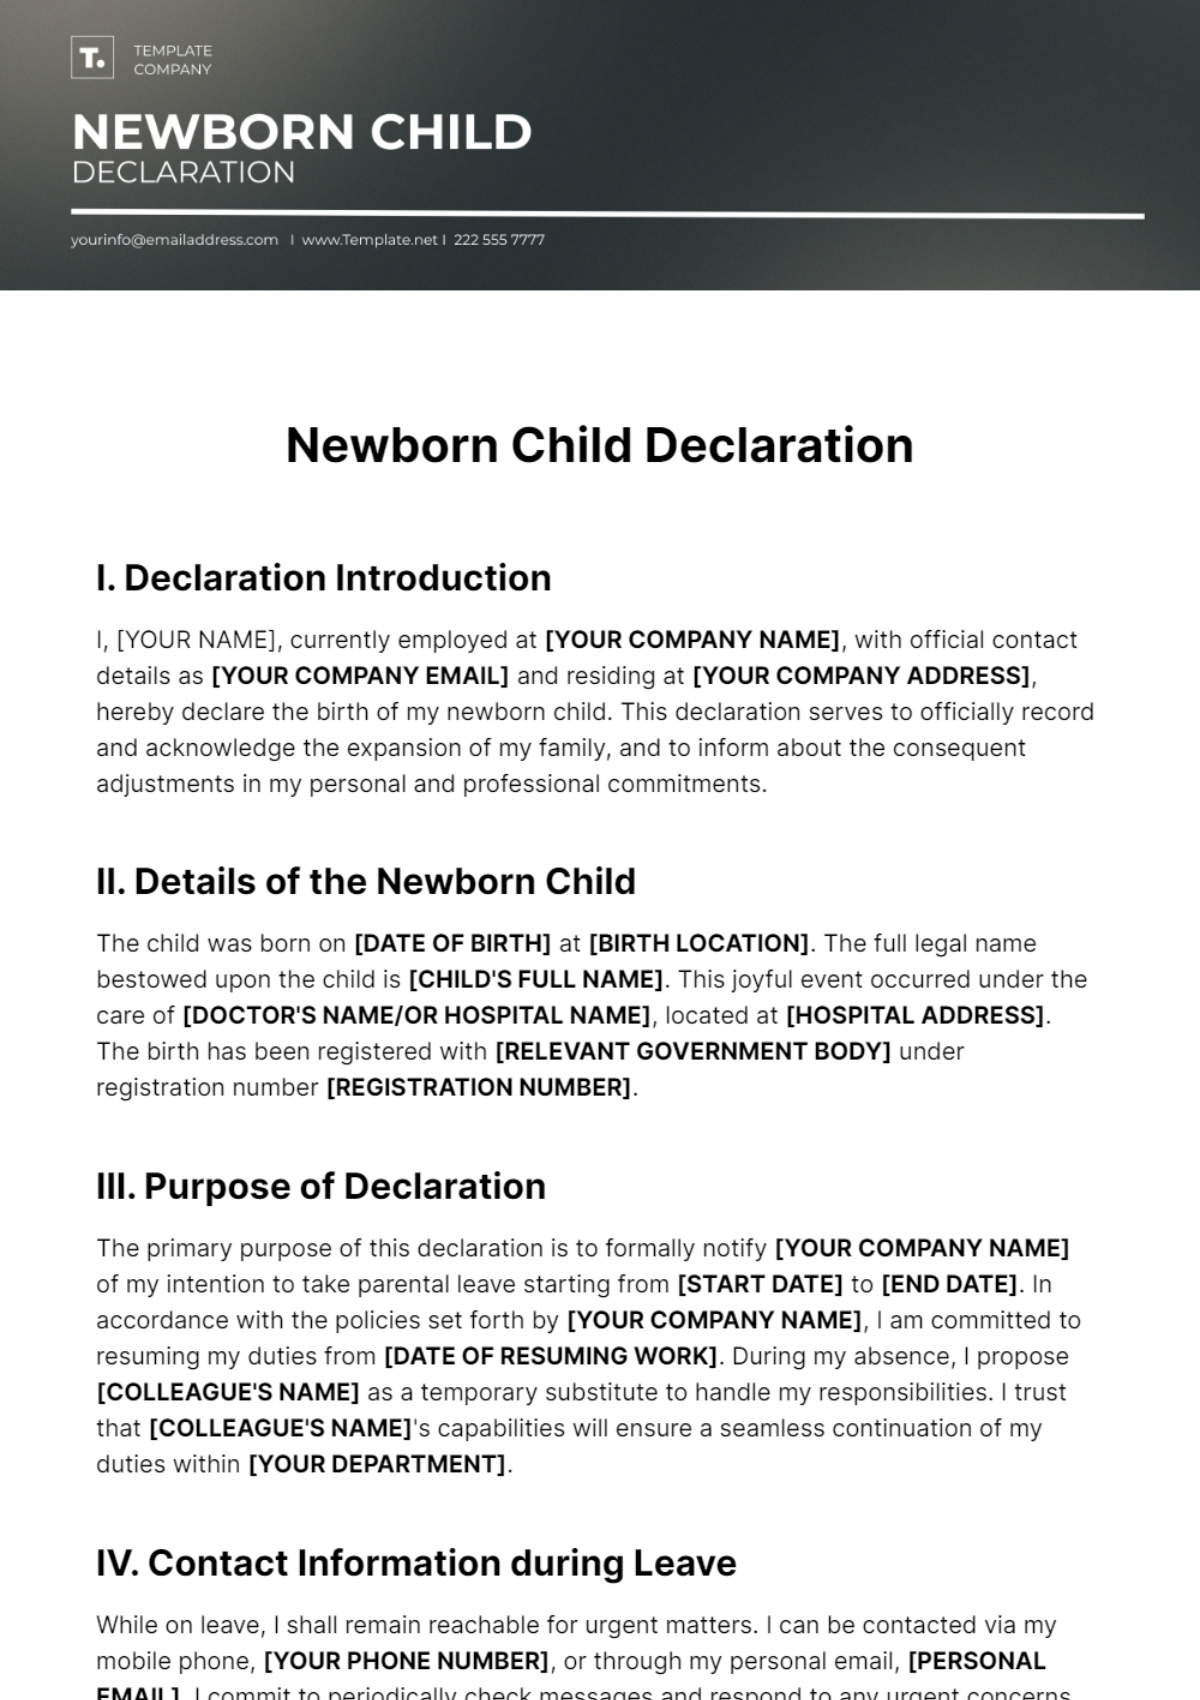 Newborn Child Declaration Template